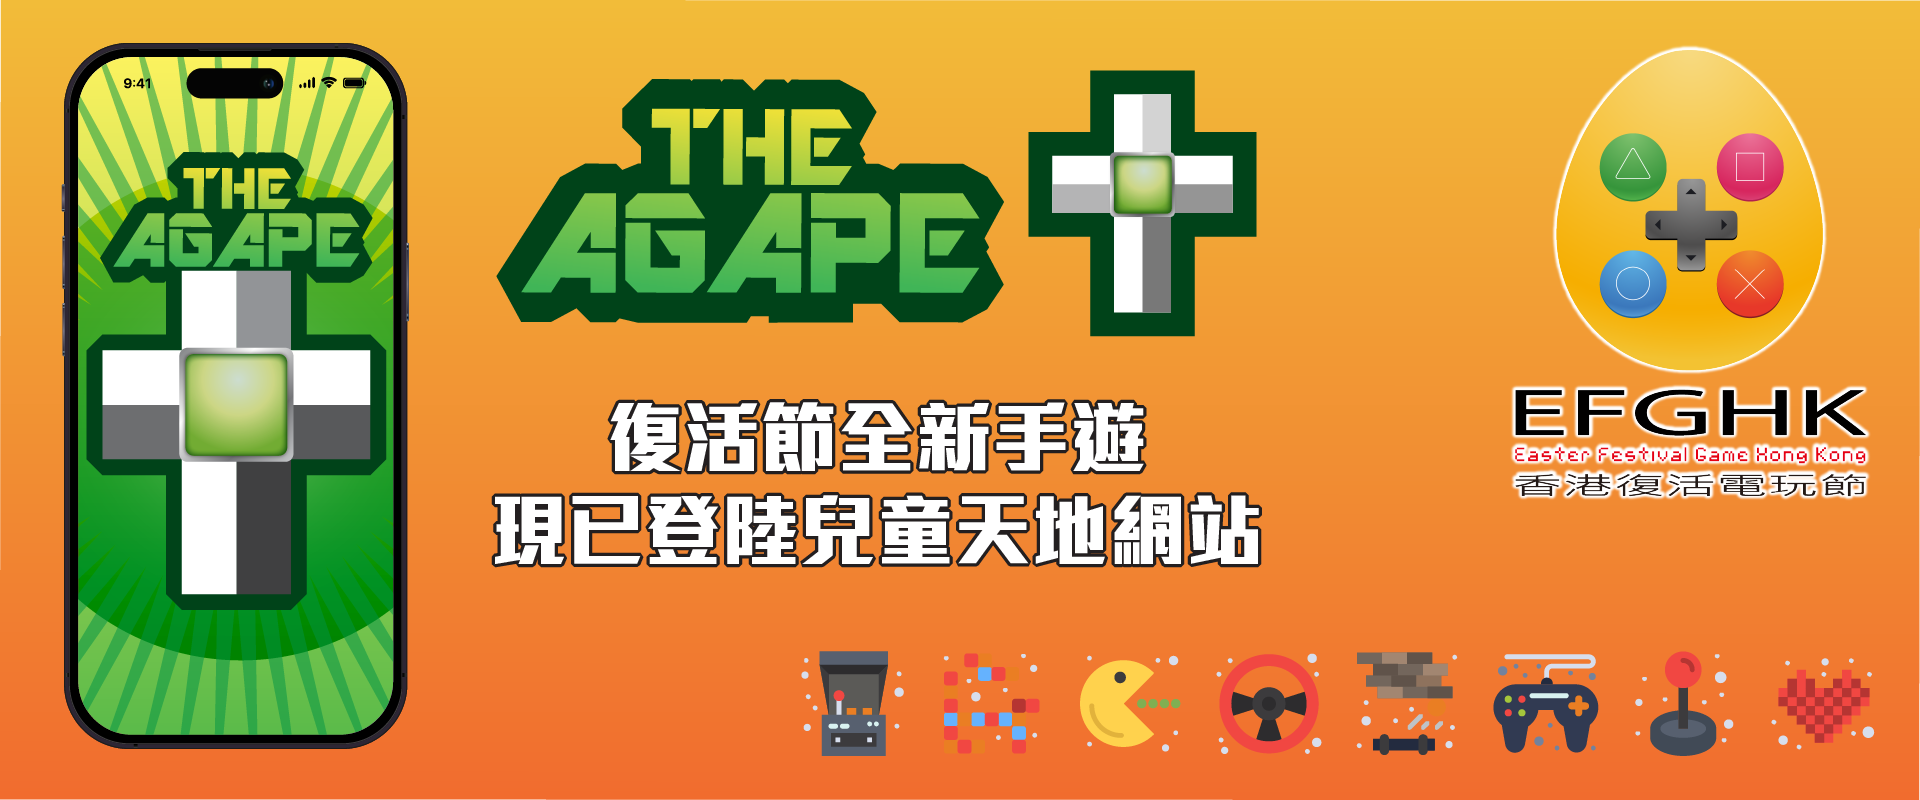 香港復活電玩節 The Agape+